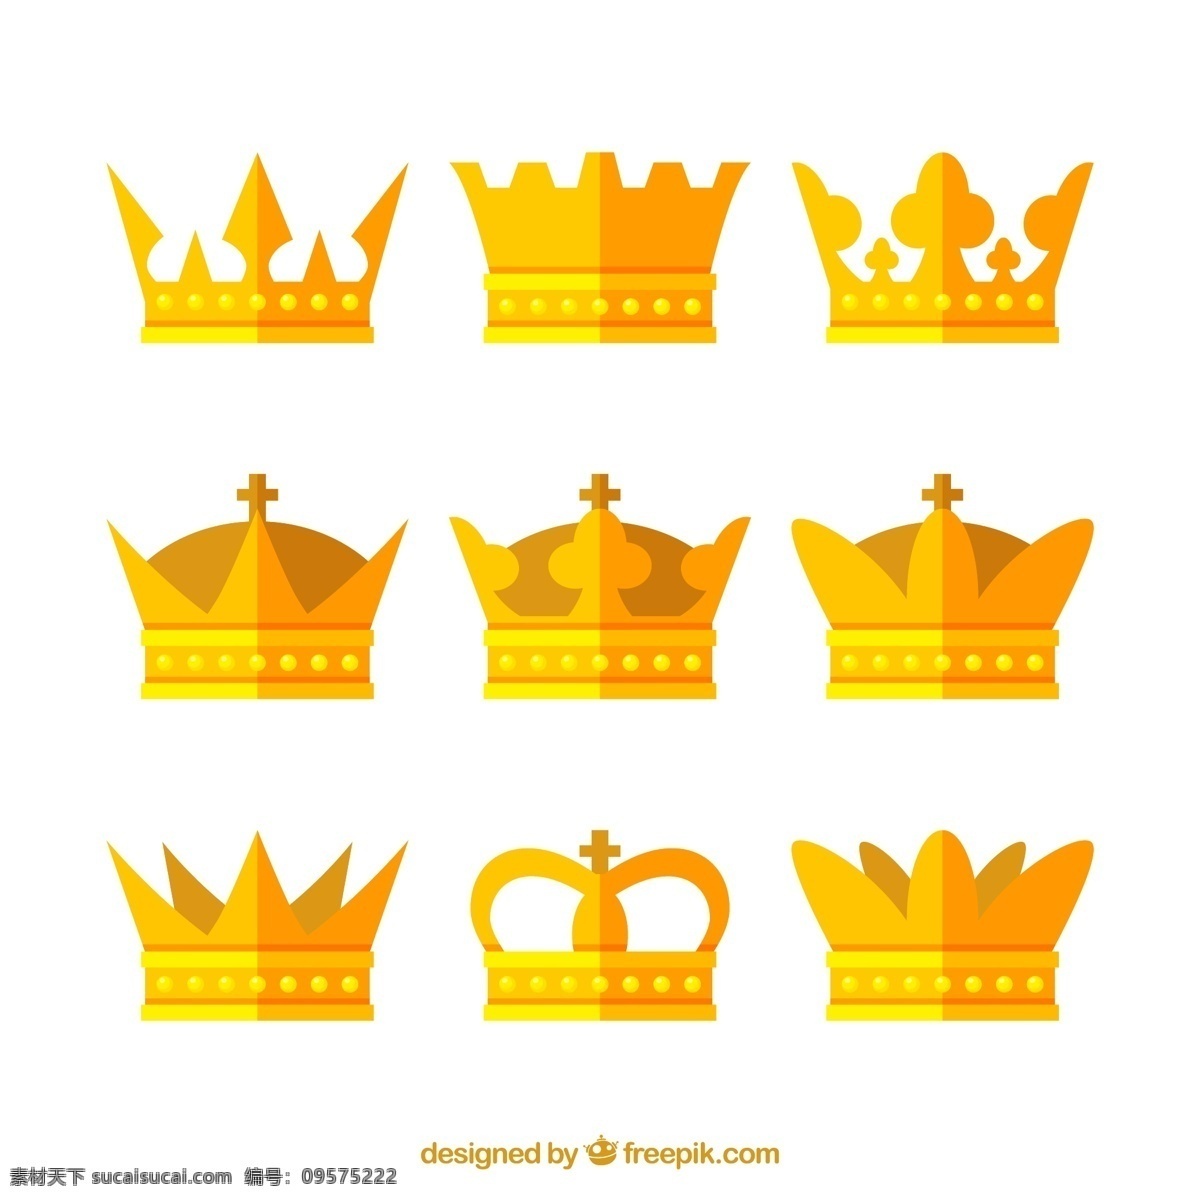 款 扁平化 金色 王冠 矢量 金黄色 皇冠 皇帝 国王 矢量素材 配饰